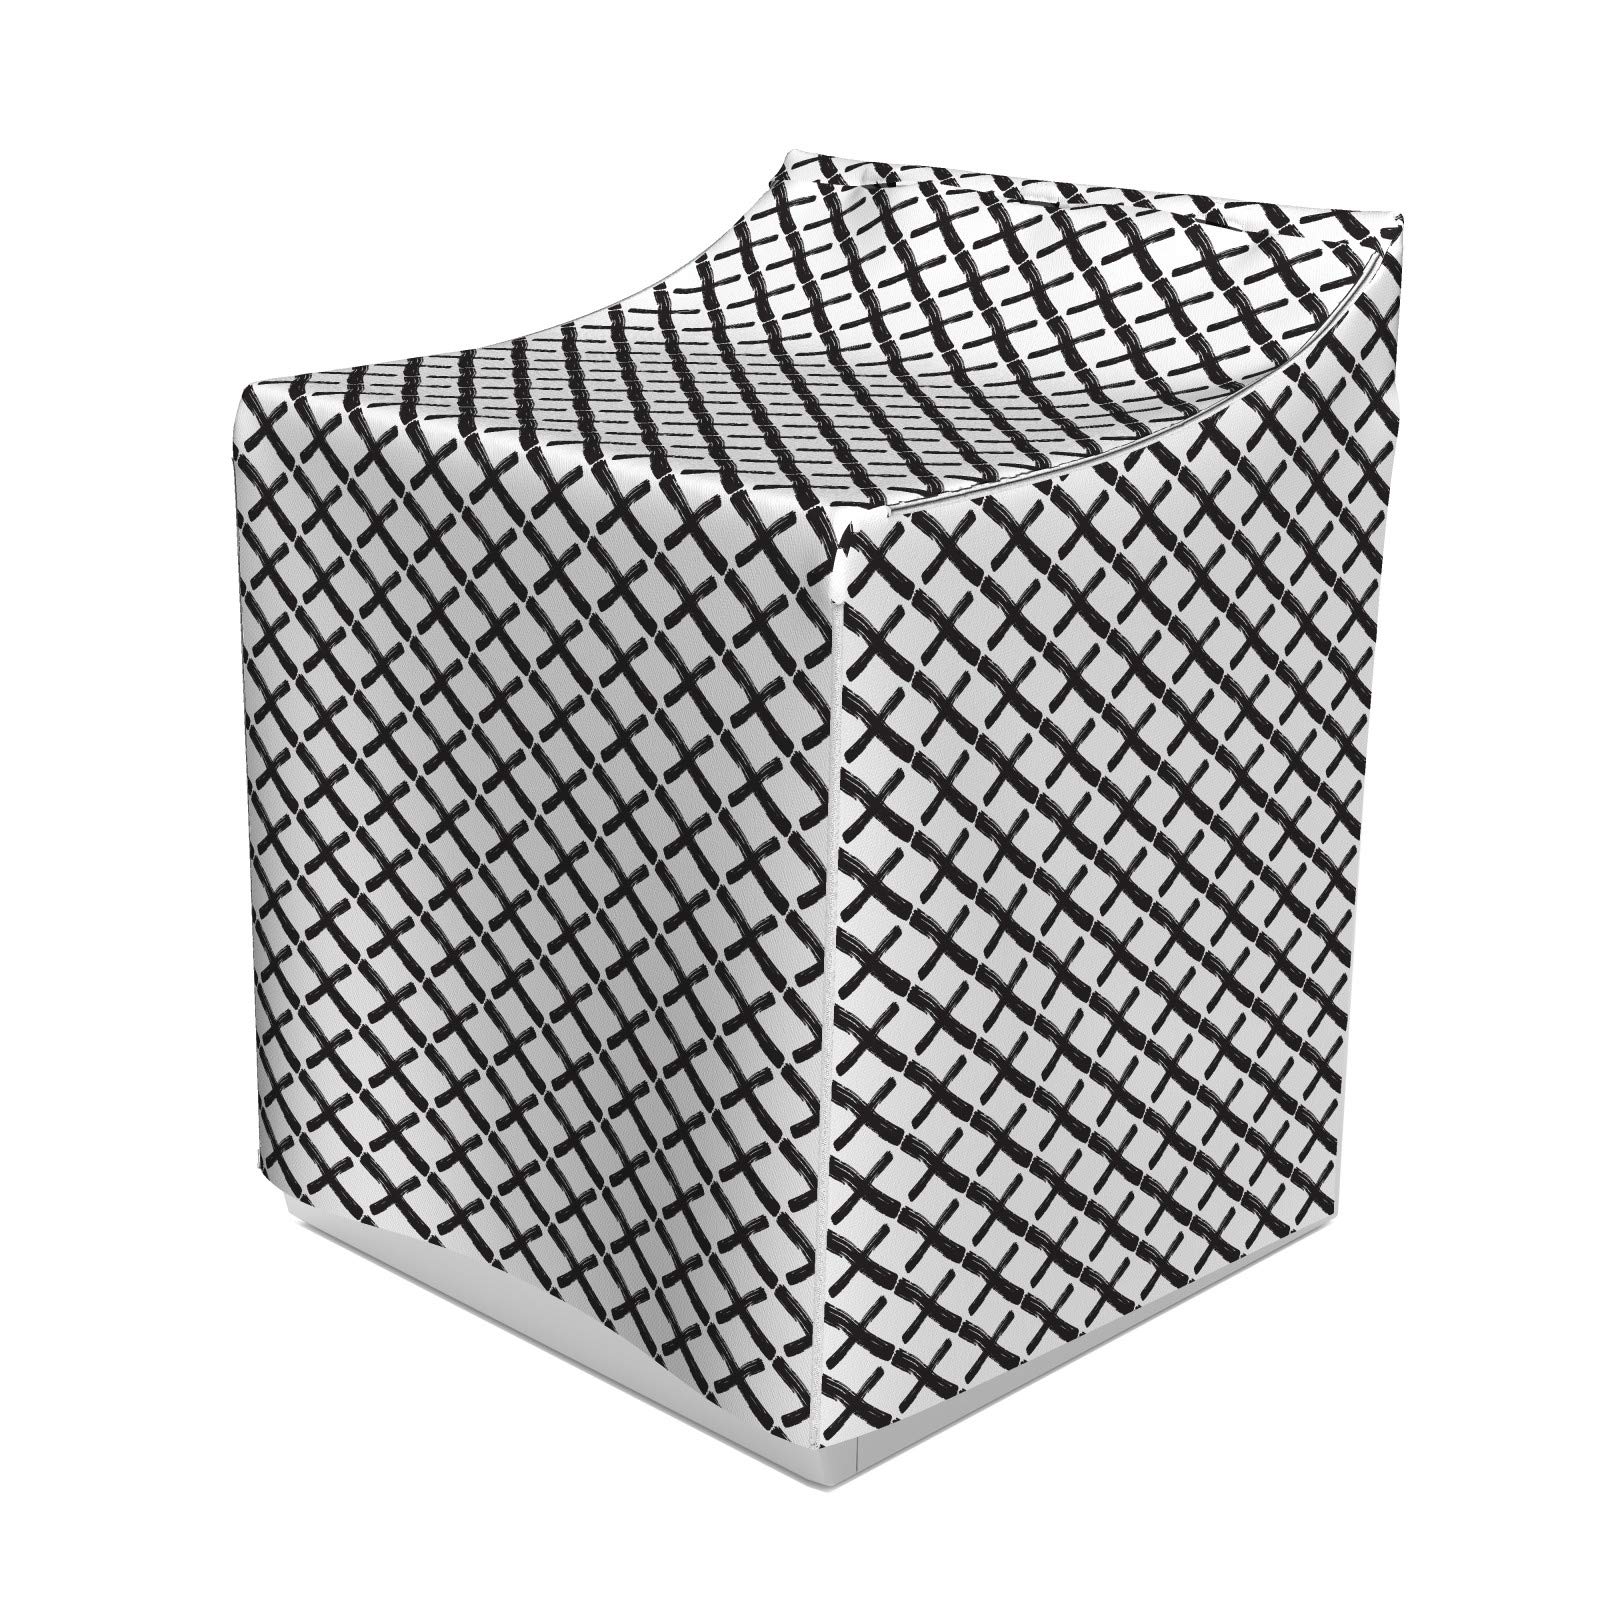 ABAKUHAUS Modern Waschmaschienen und Trockner, Mathe-Geometrie-minimalistisches Design mit Brushstrokes Wie Kunstdruck Inspired, Bezug Dekorativ aus Stoff, 70x75x100 cm, Charcoal Grau Weiß